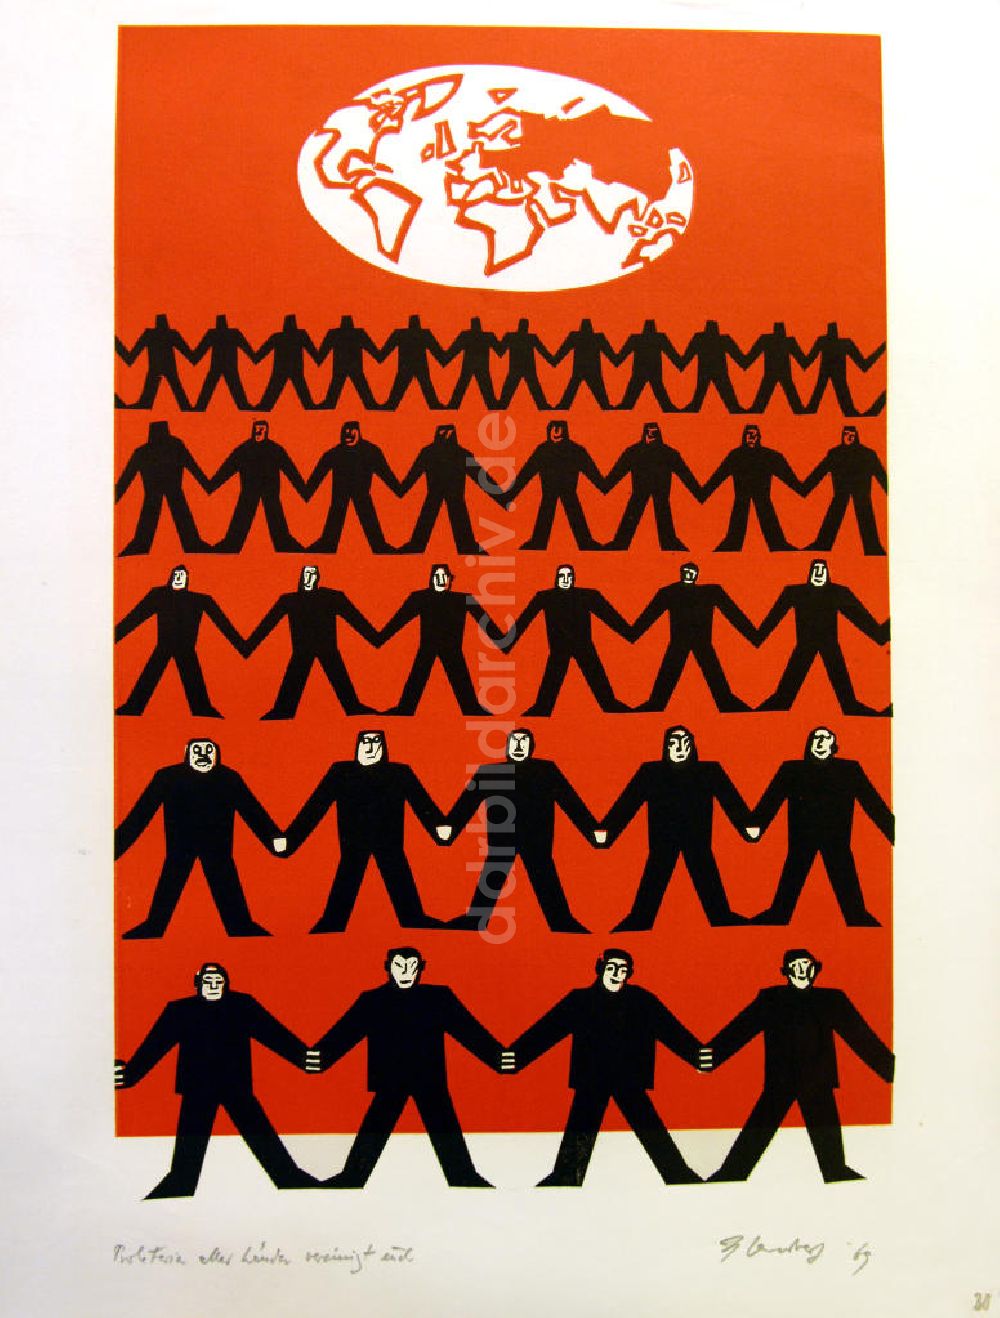 DDR-Fotoarchiv: Berlin - Grafik von Herbert Sandberg Motiv 30 aus dem Zyklus Bilder zum Kommunistischen Manifest aus dem Jahr 1969